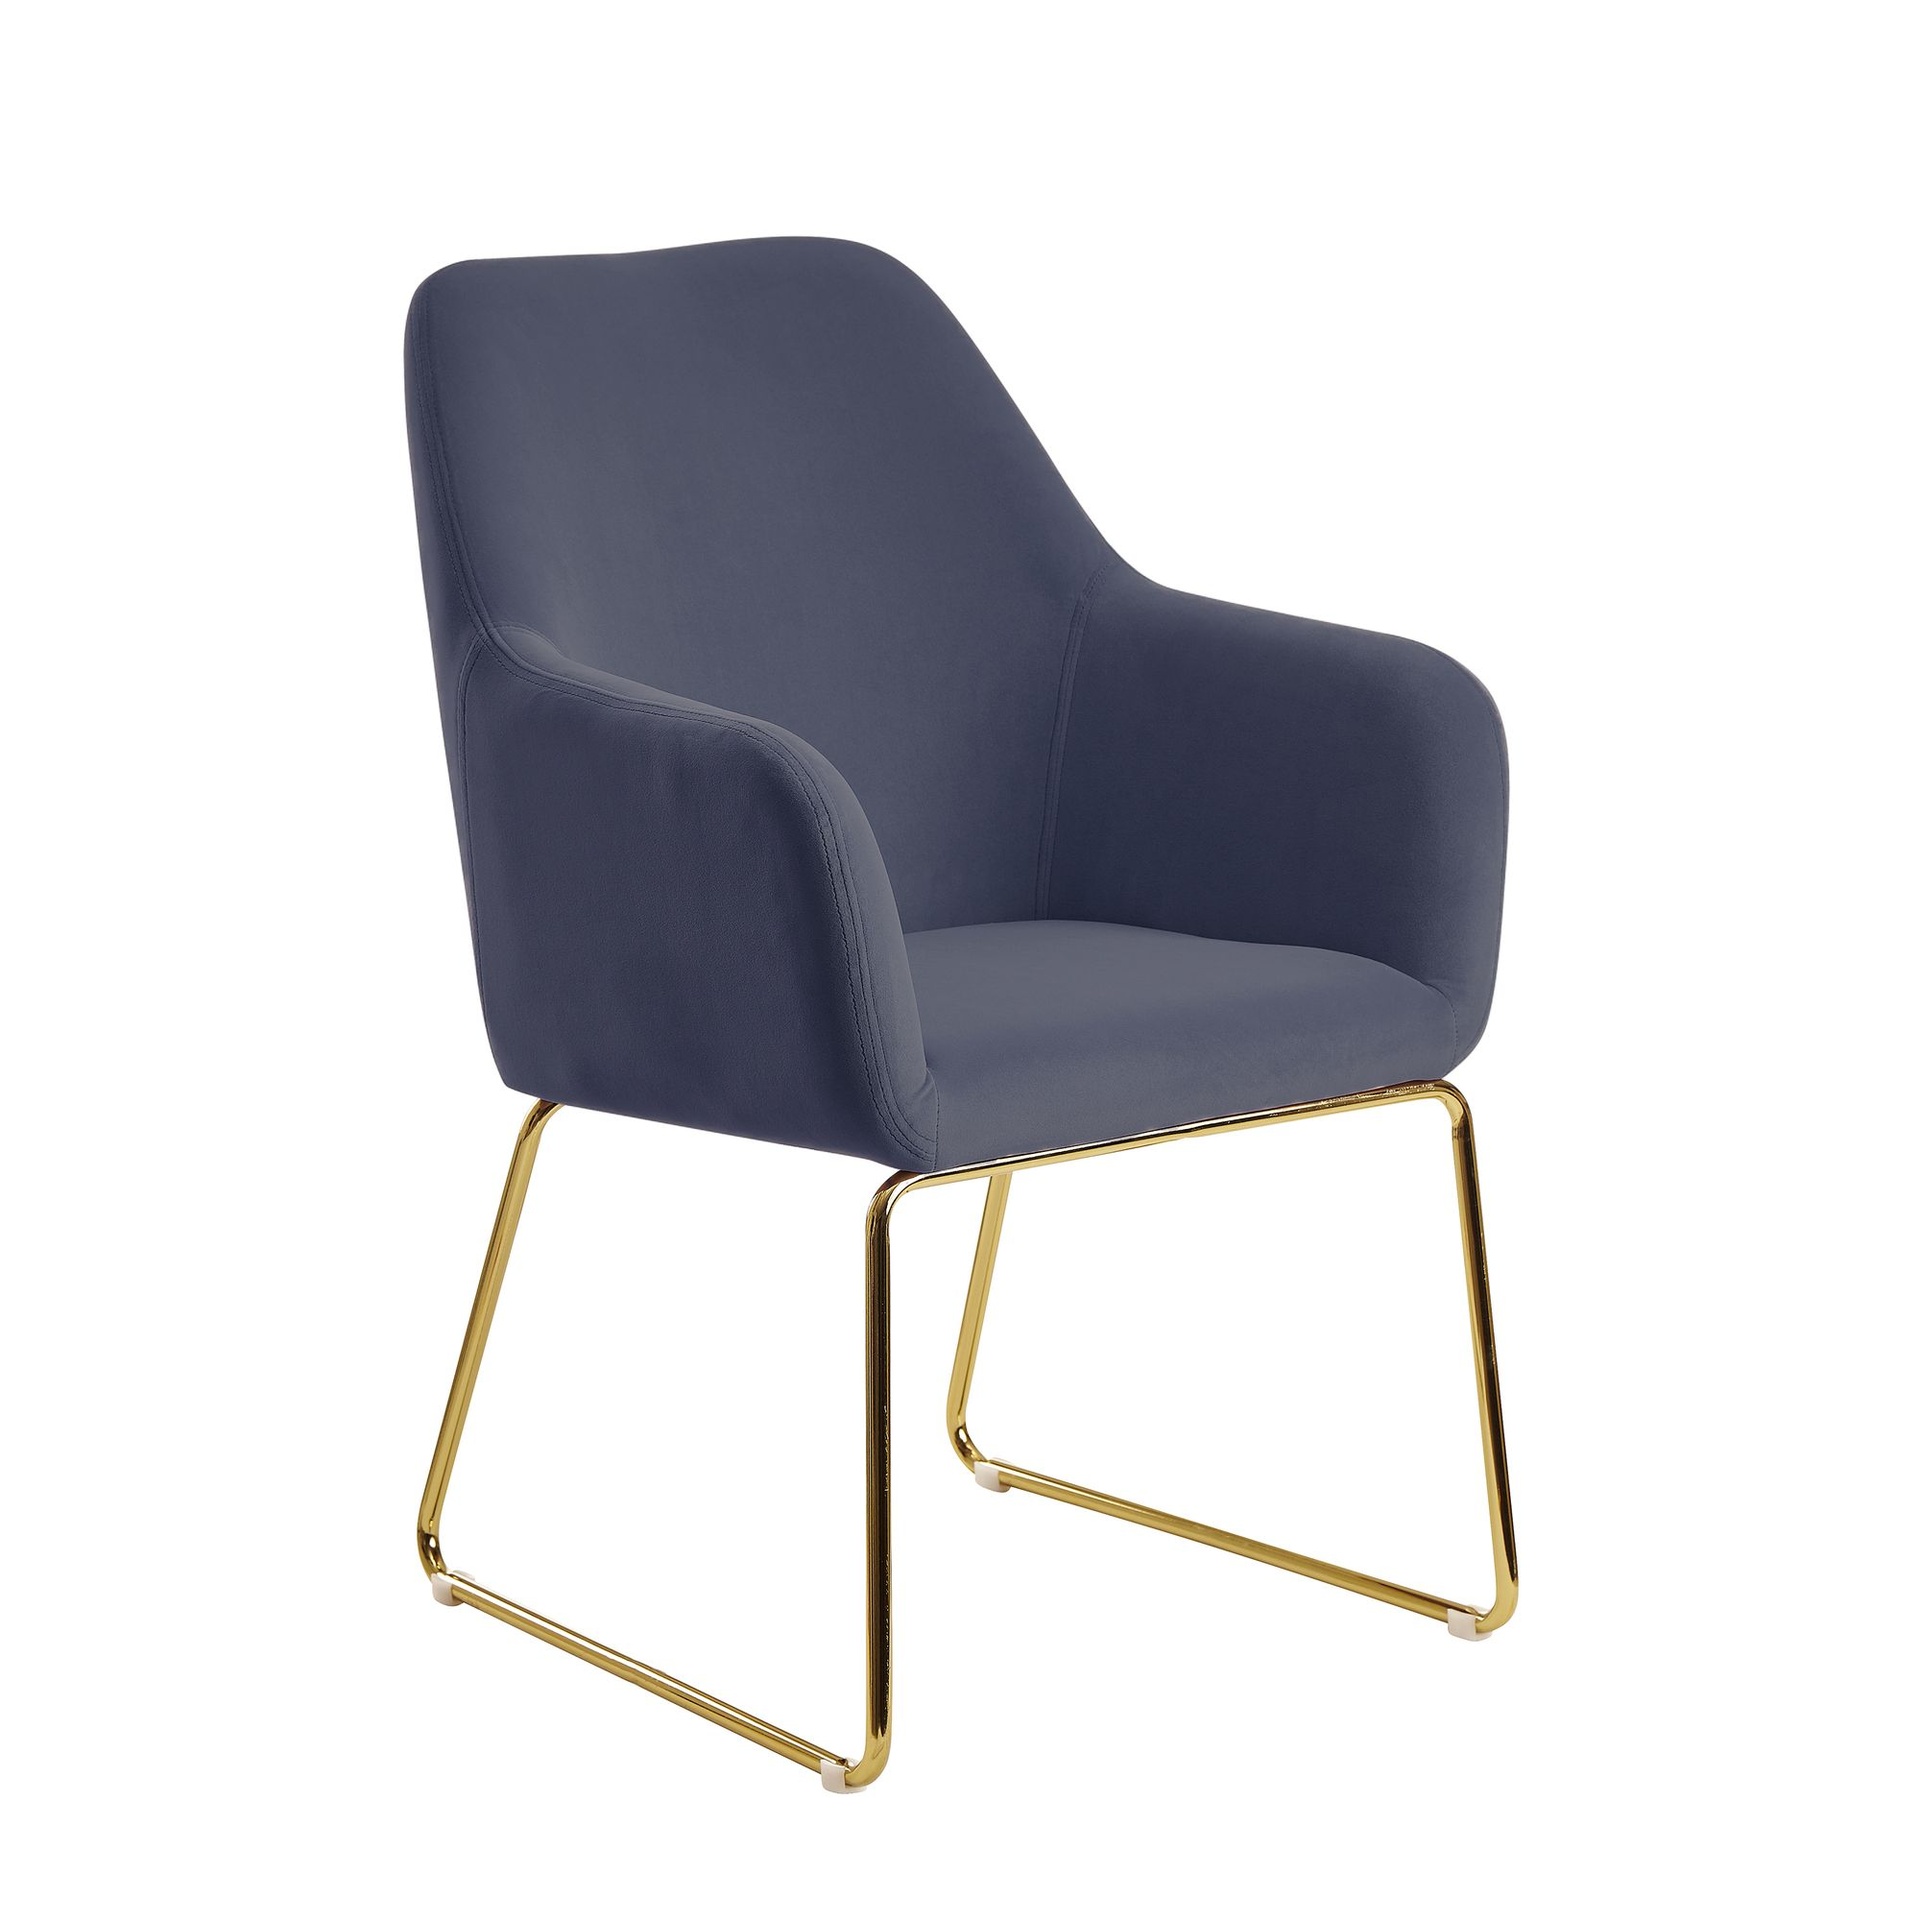 [A10351] Chaise de salle à manger chaise de cuisine en velours bleu gris avec pieds dorés, chaise coque tissu/métal, chaise rembourrée design salle à manger, rembourrée